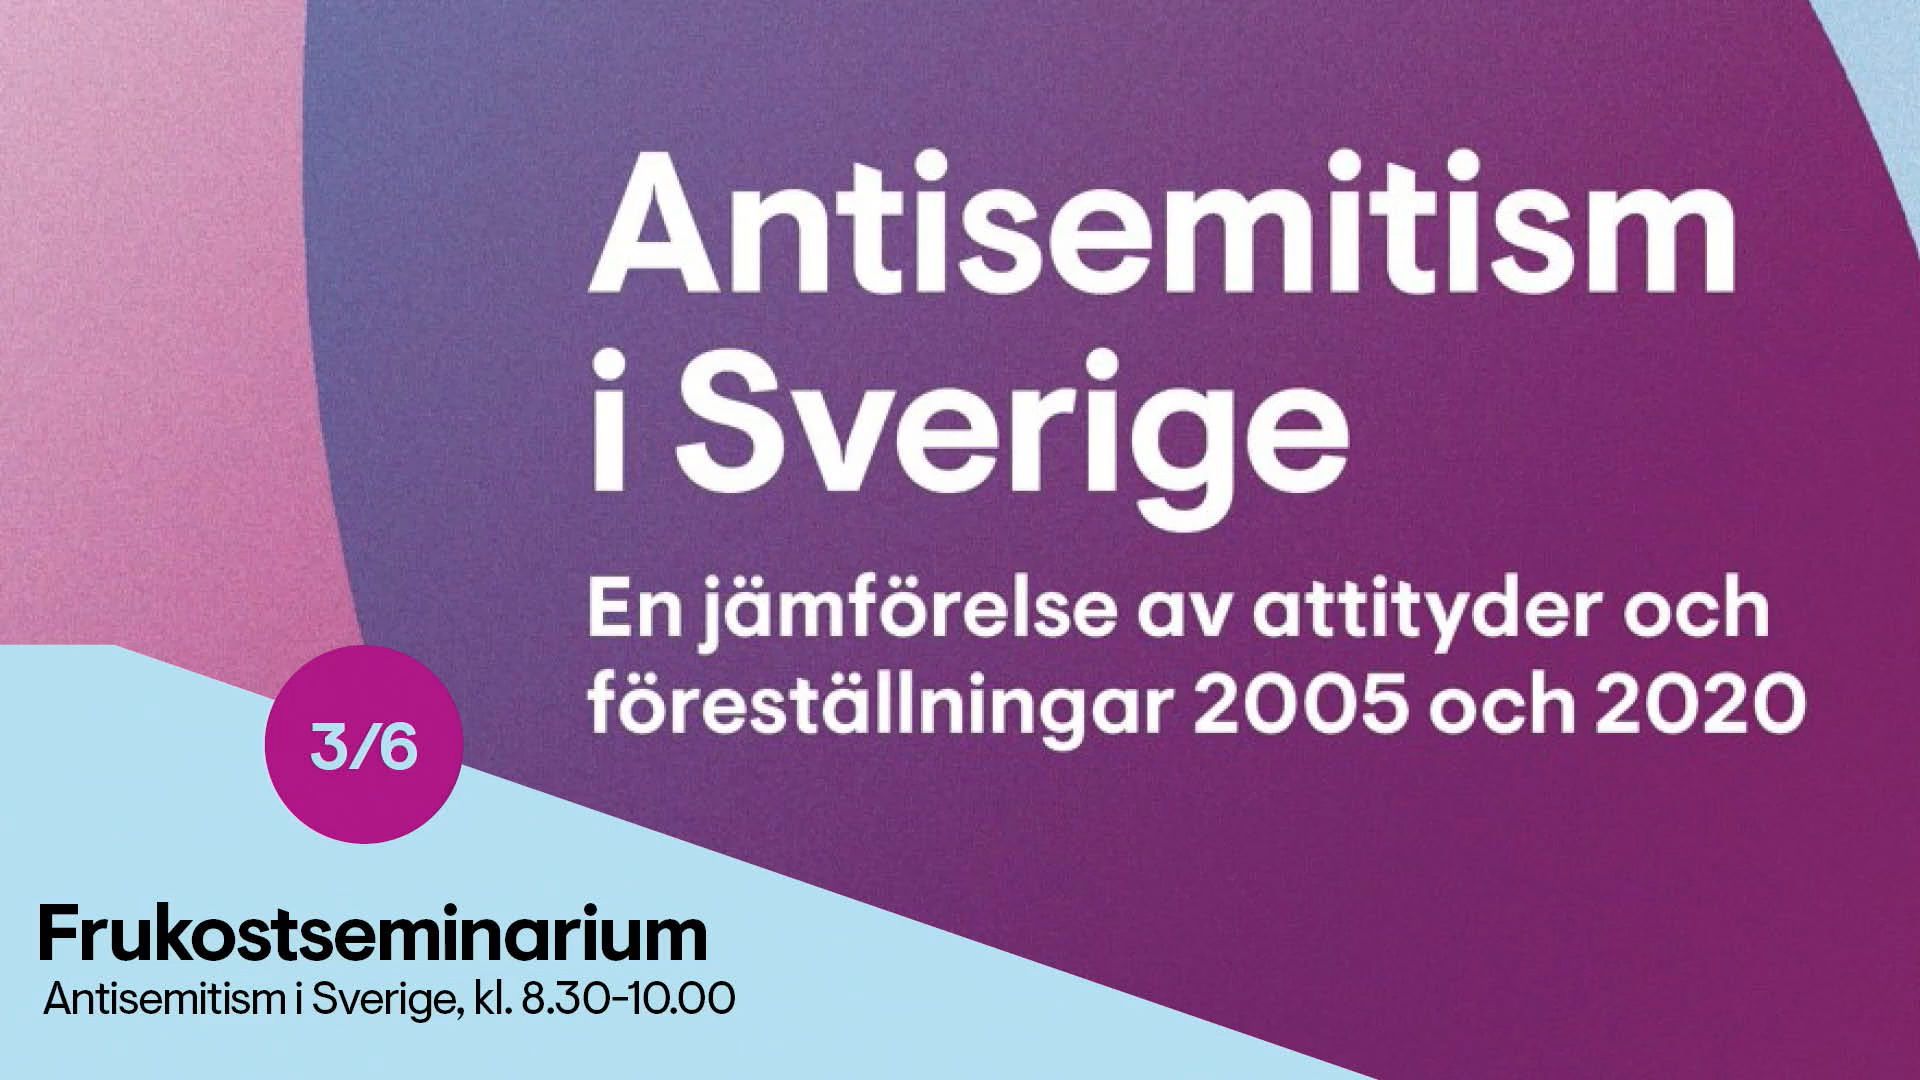 Antisemitism i Sverige. En jämförelse av attityder och föreställningar 2005 och 2020